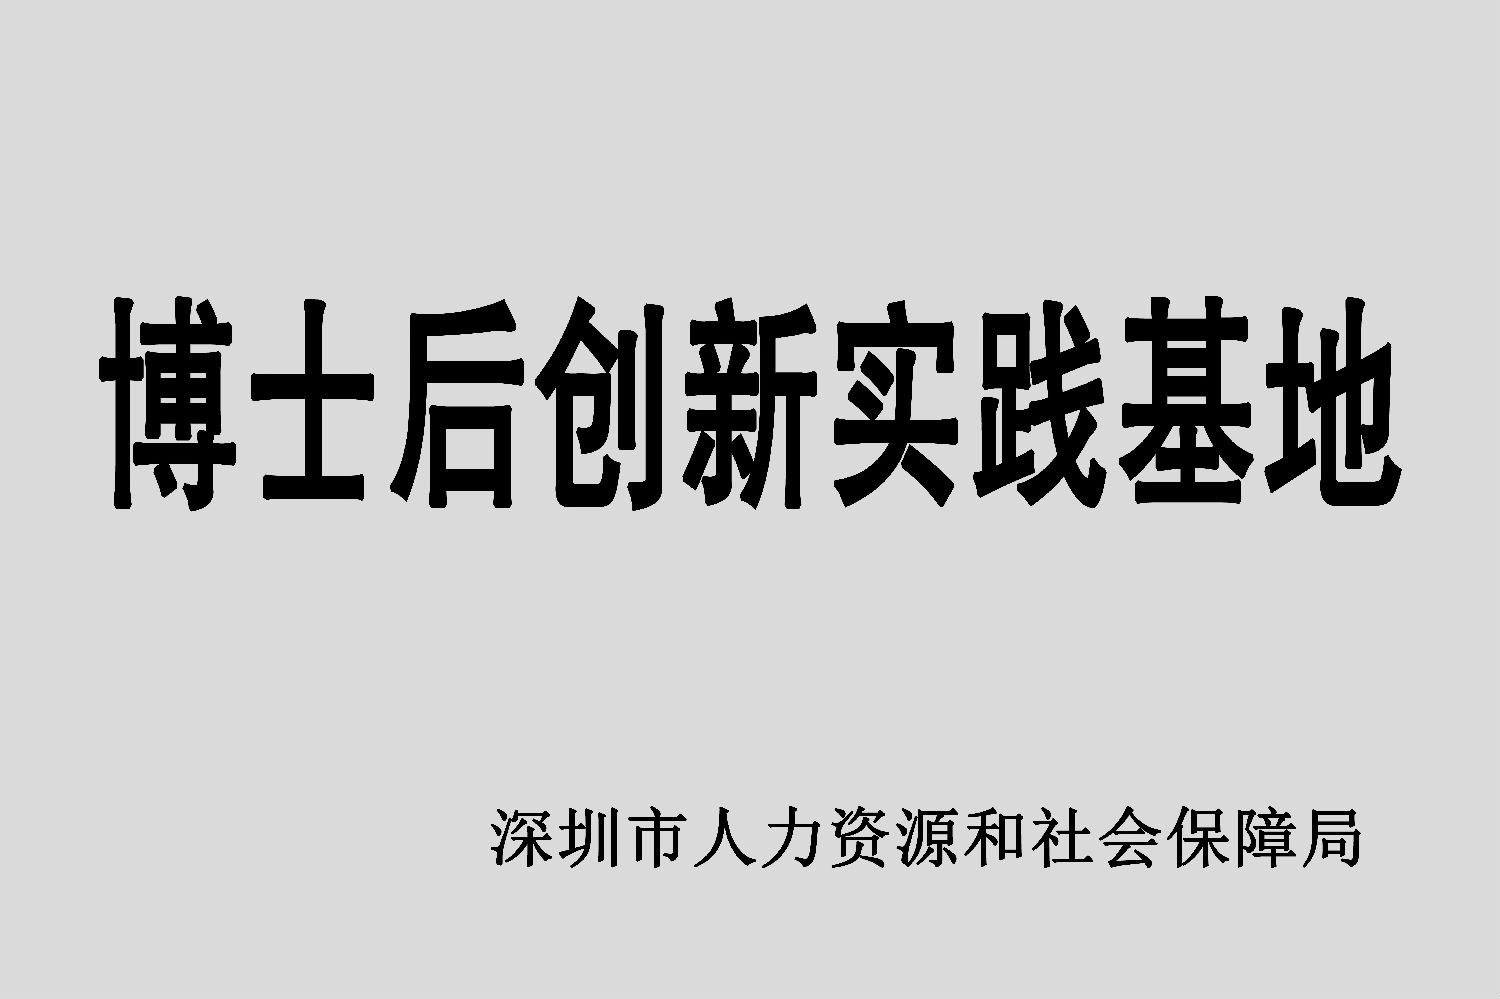 1月14日,深圳市和胜金属技术有限公司经深圳市人力资源和社会保障局批准,博士后创新实践基地正式设立